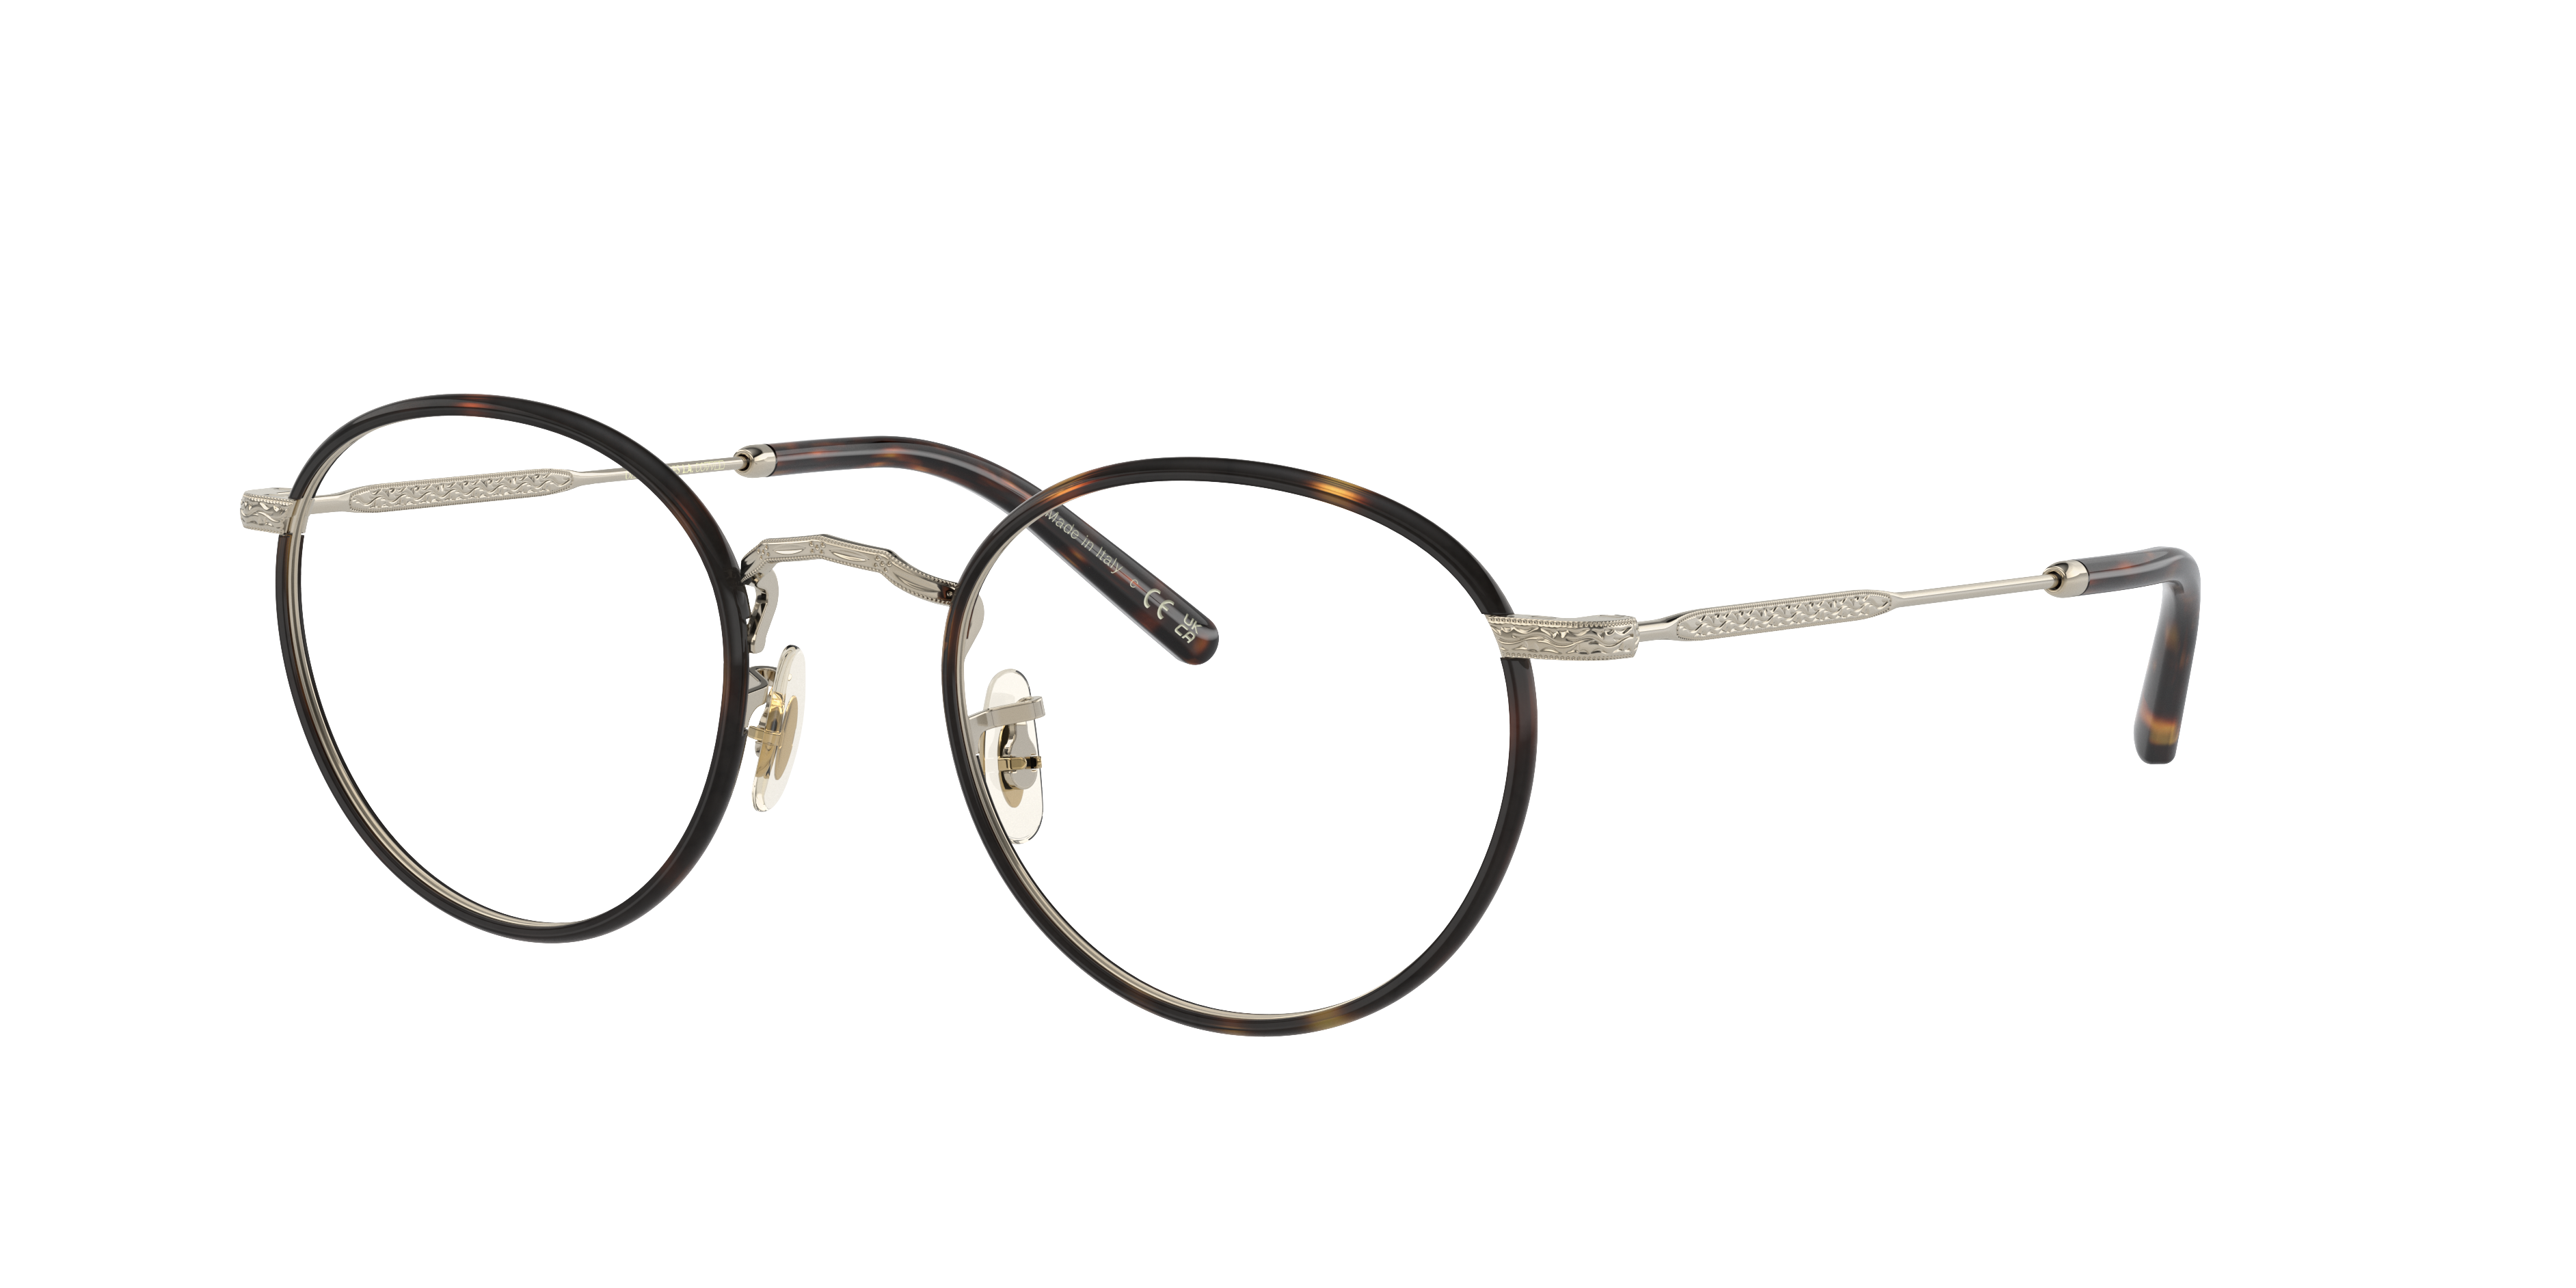 Eyeglasses OV1308 - Brushed Gold/362 - Clear - メタル | Oliver 